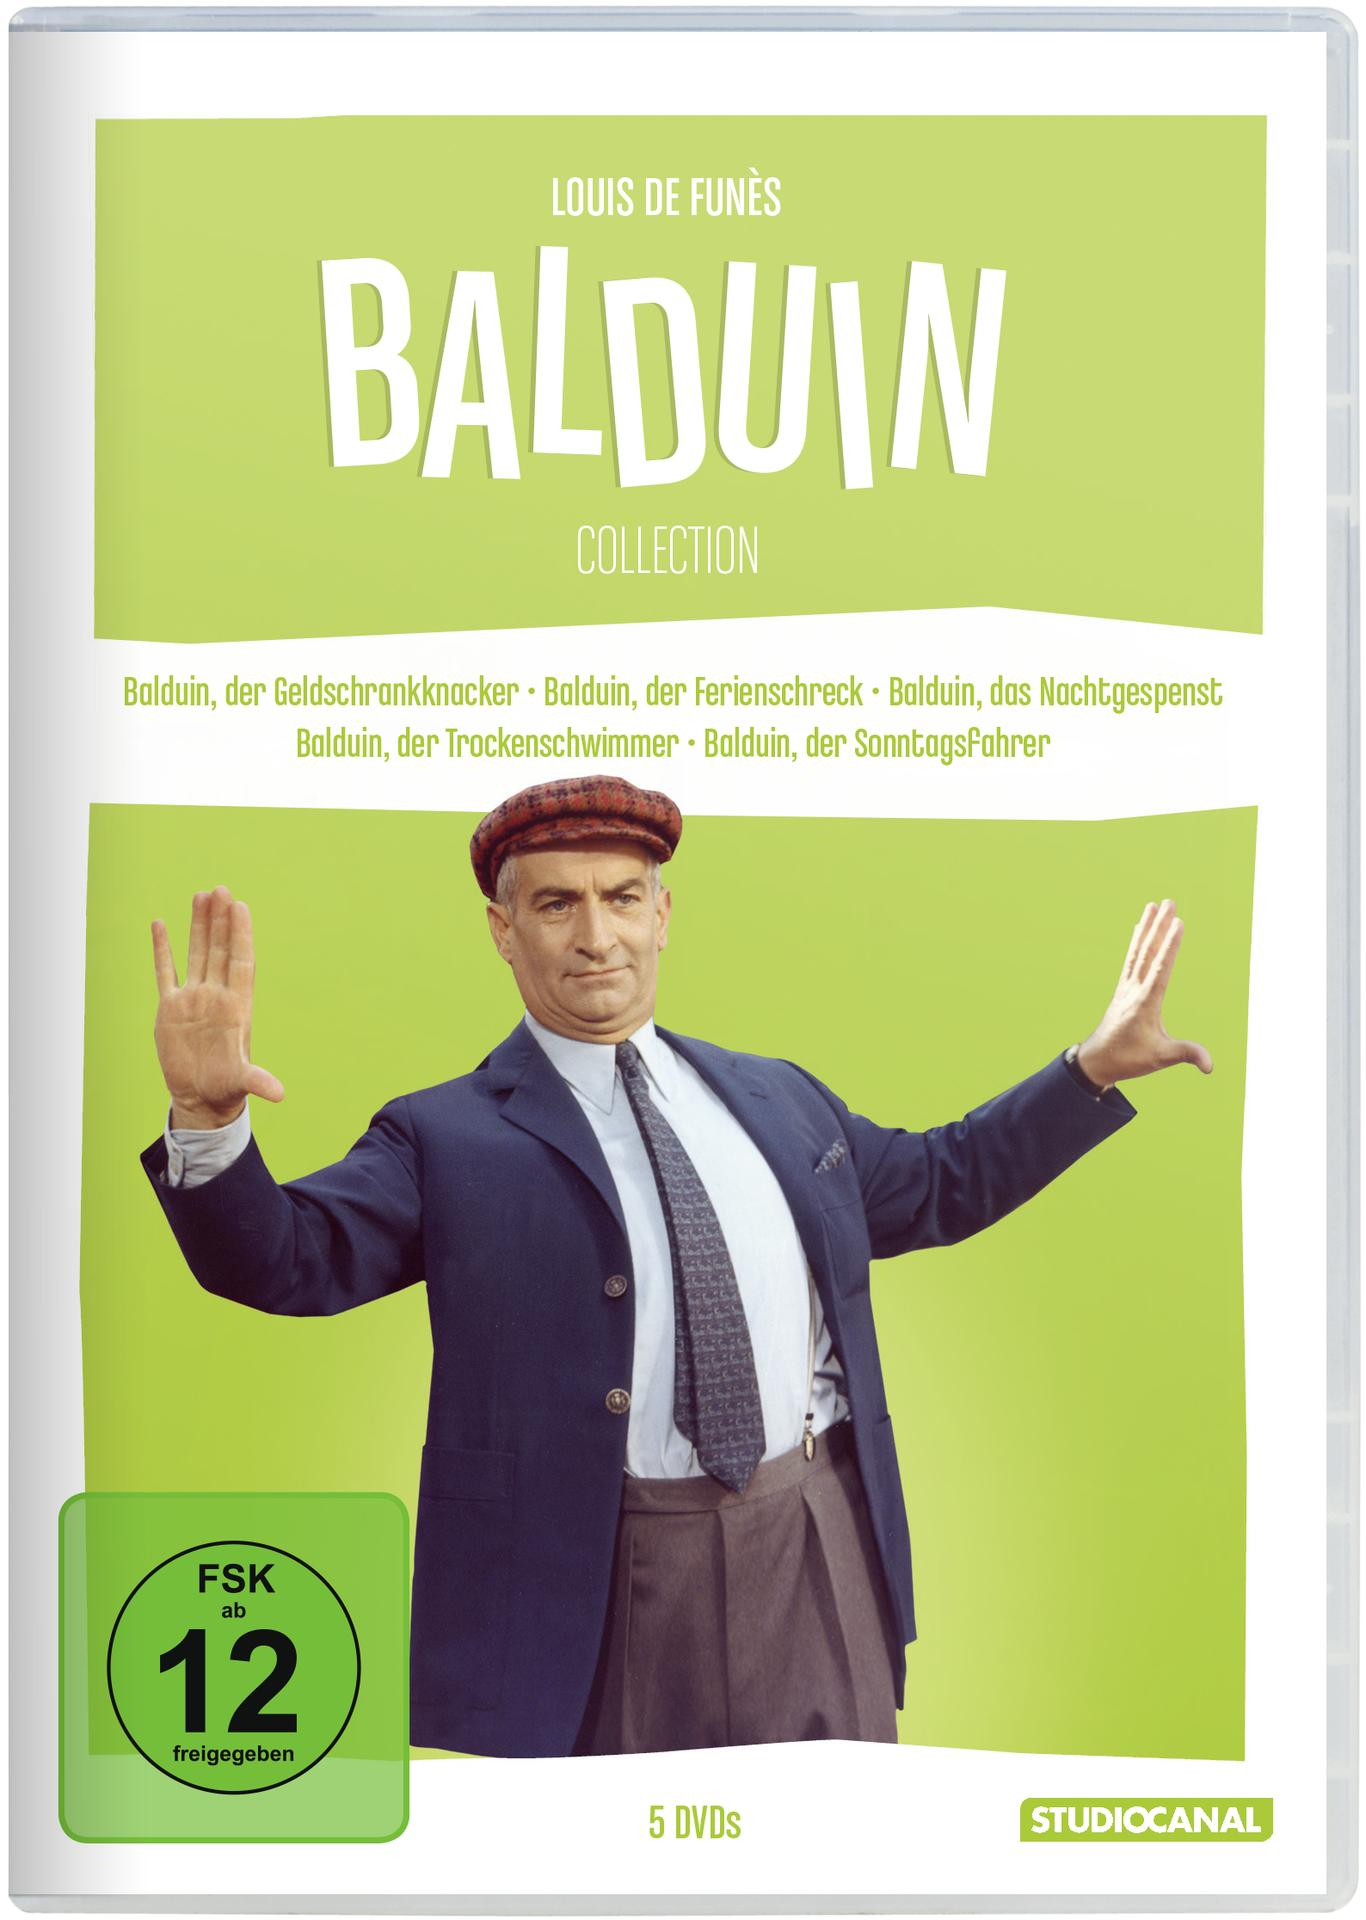 Louis de Funès Collection Balduin Die DVD 